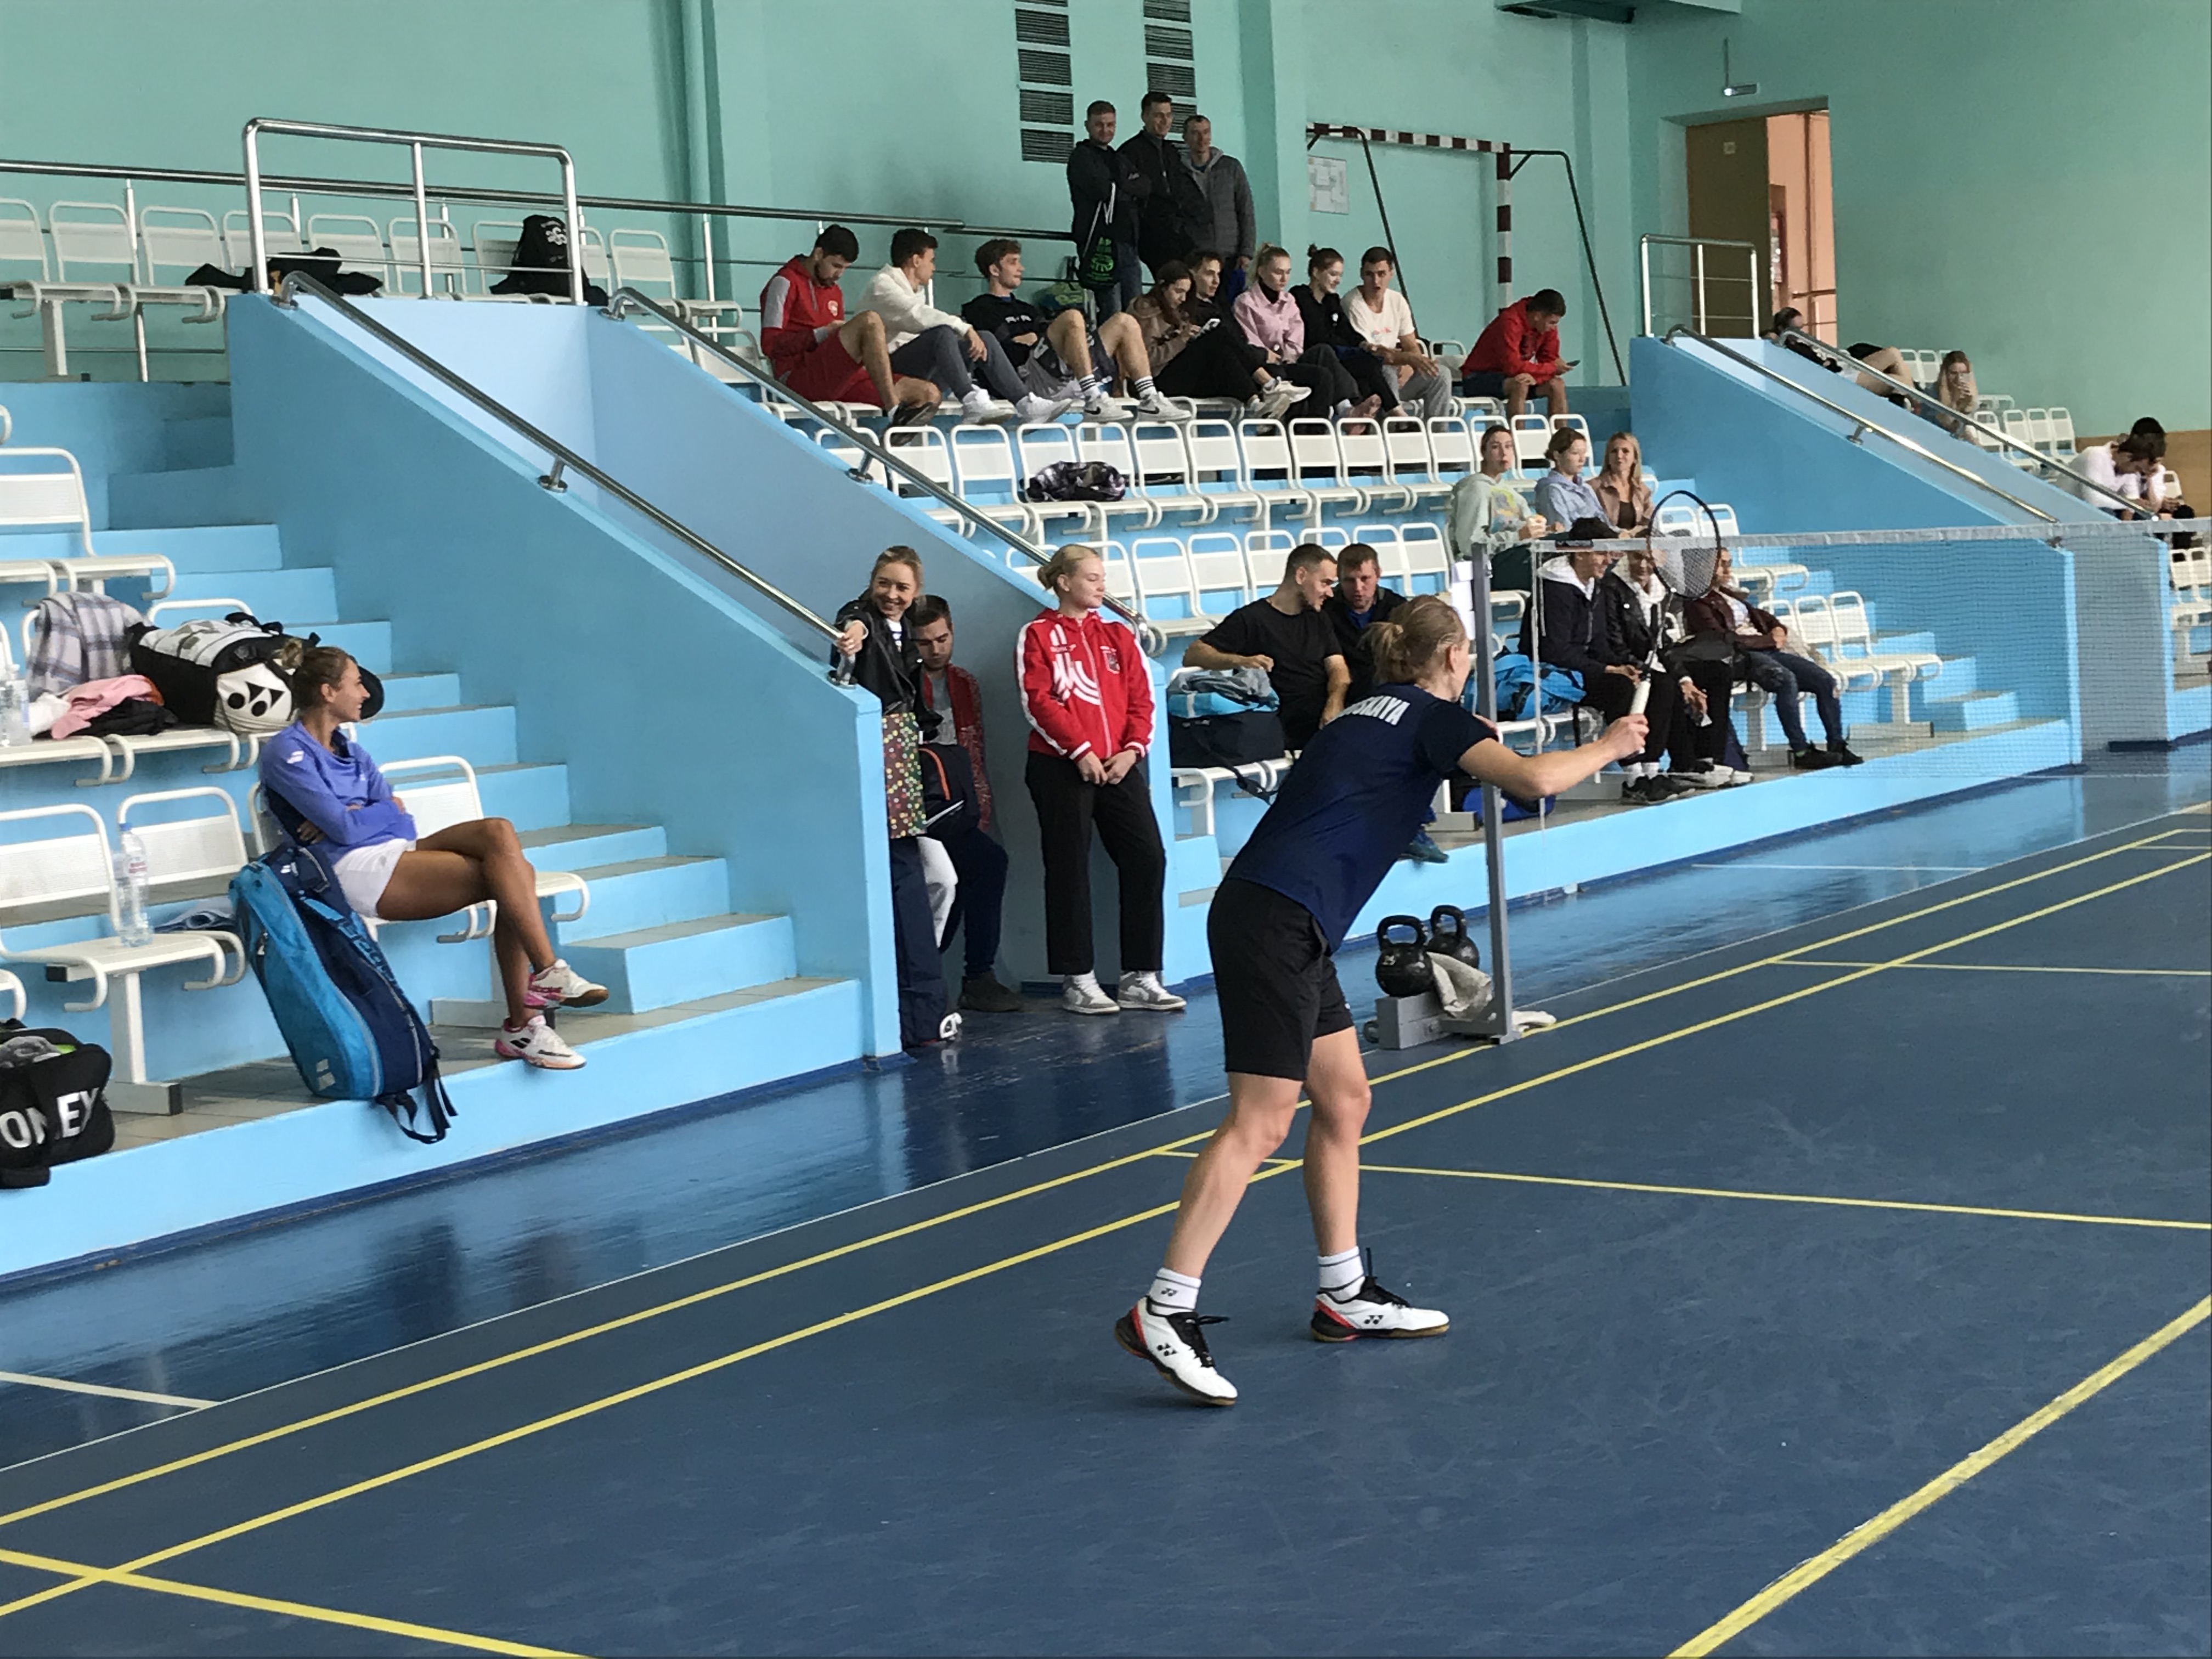 turnir po badmintonu proshyol v universitete lobachevskogo